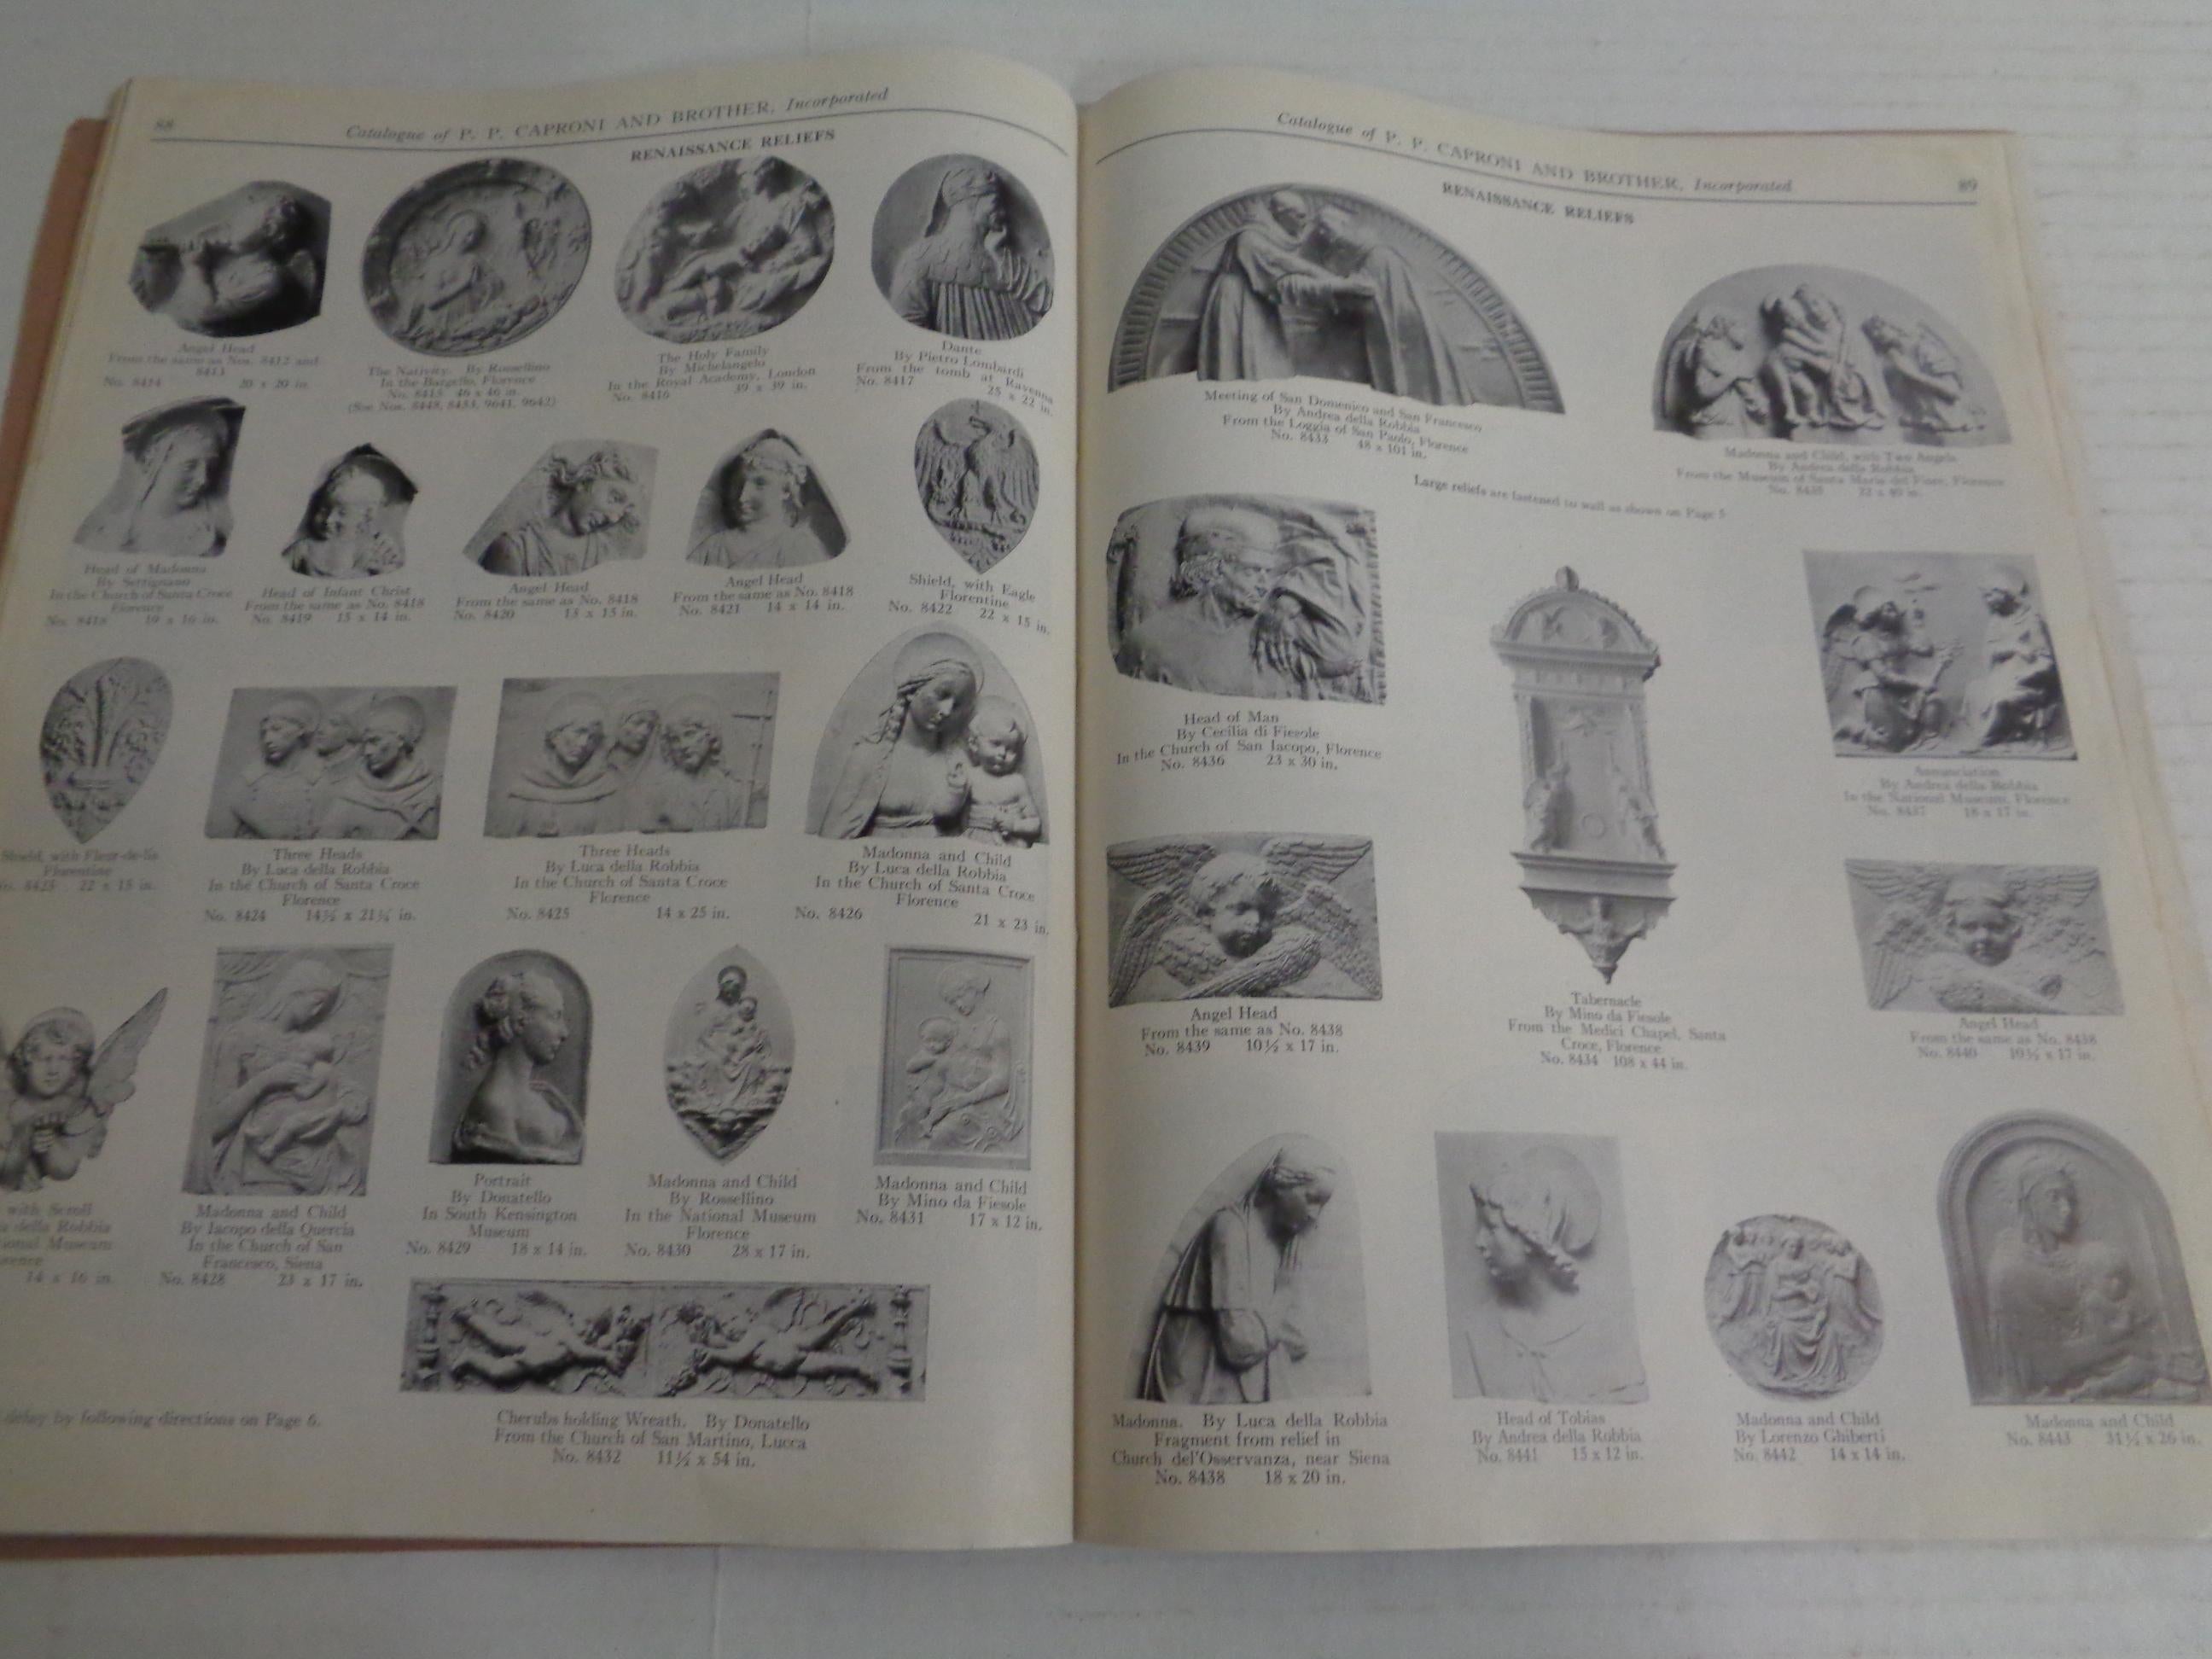 Caproni Casts : Chefs-d'œuvre de la sculpture - Catalogue 1932 Caproni Brothers  en vente 1